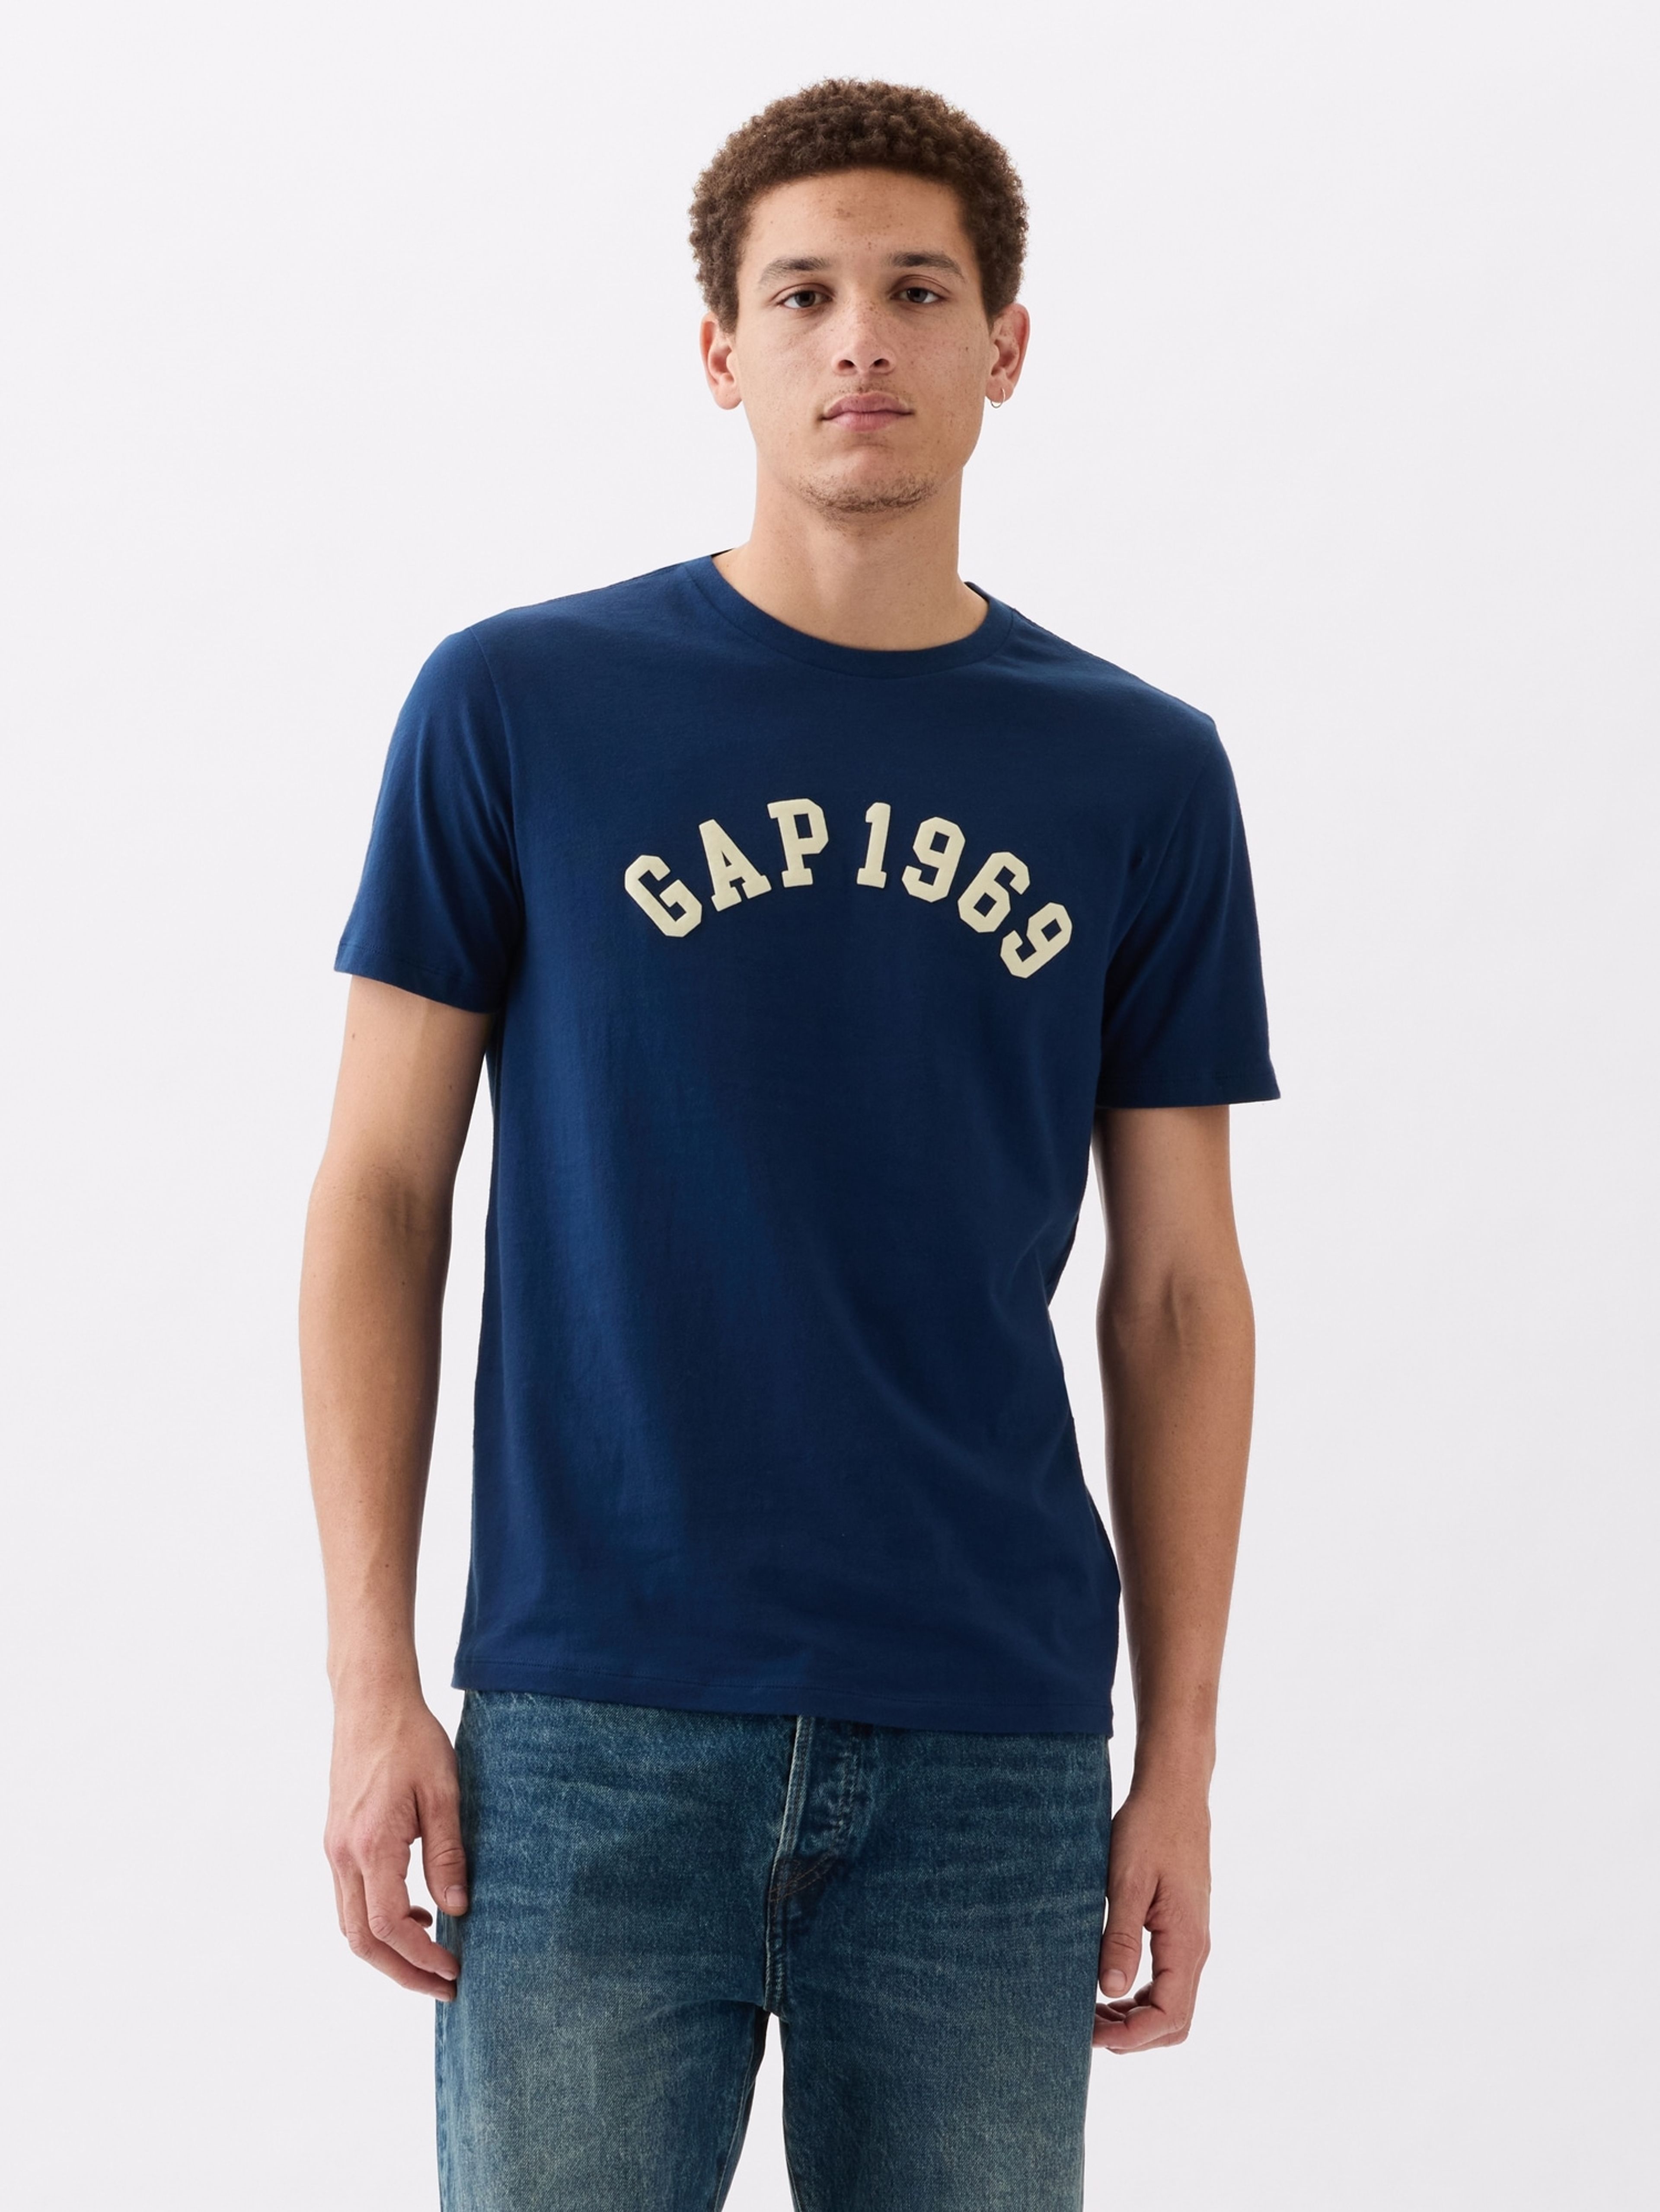 T-Shirt GAP 1969